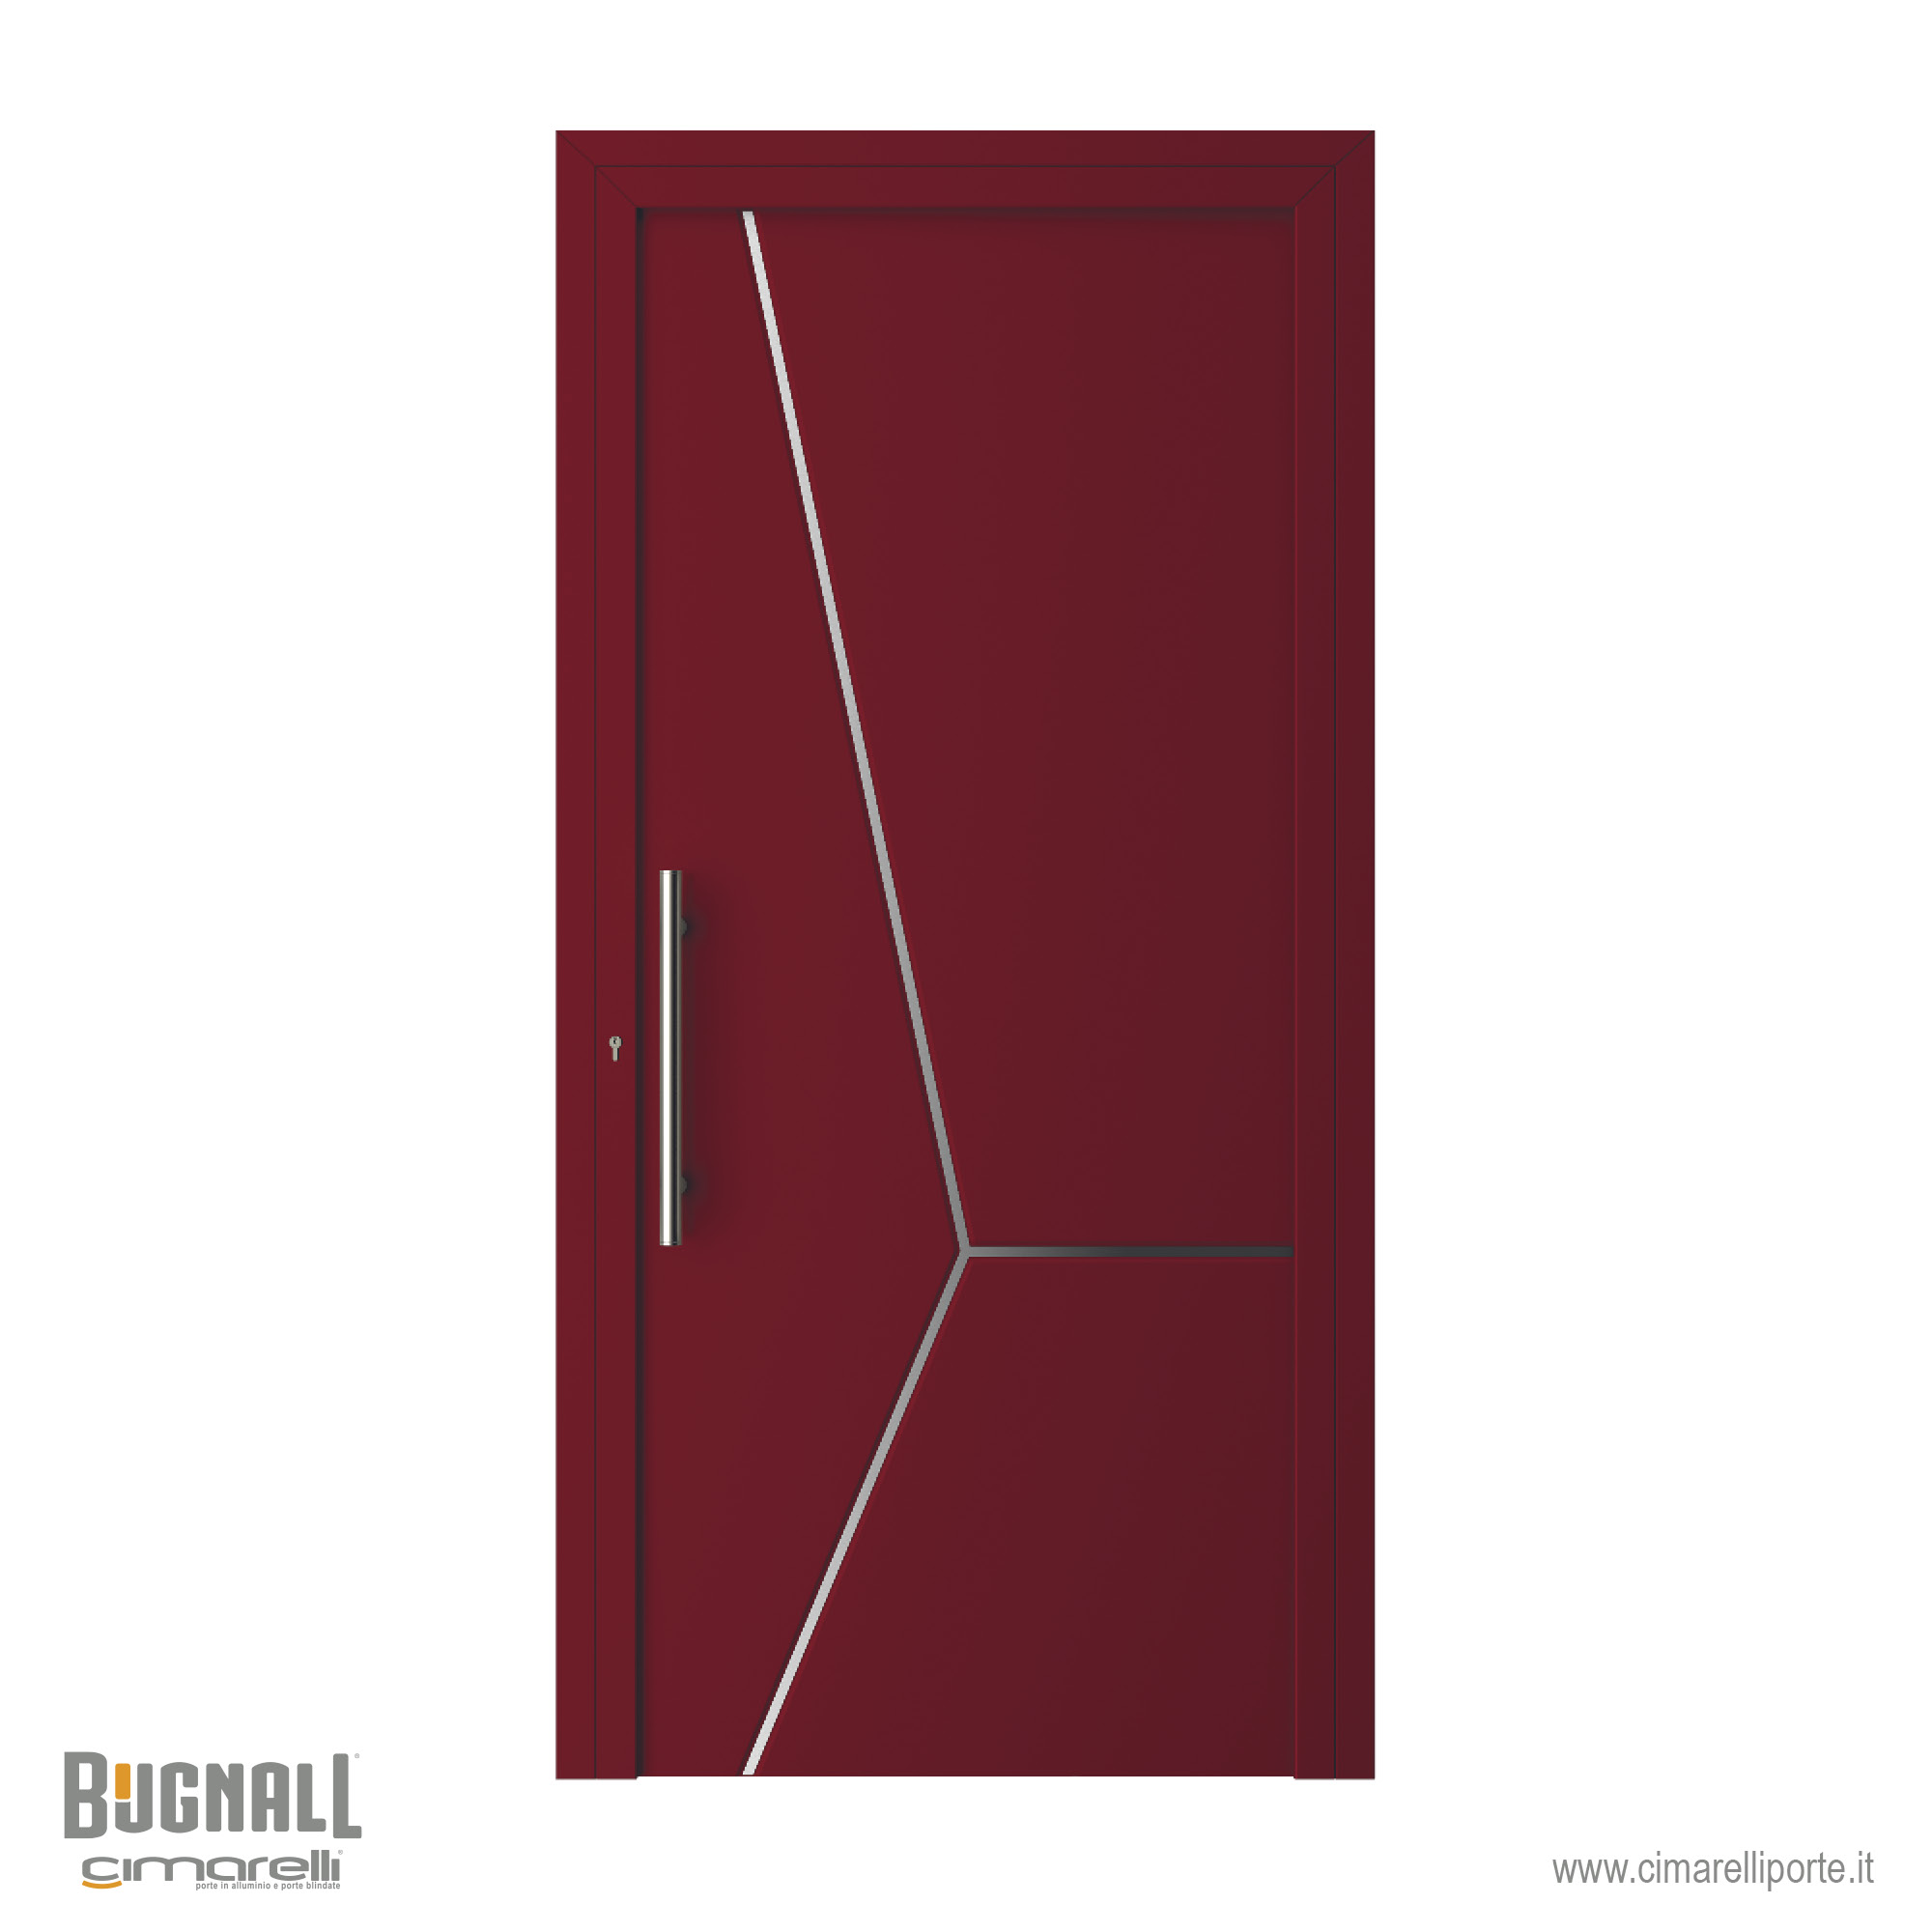 Modello 4320 – Emanuele Nonni design per Bugnall – Cimarelli